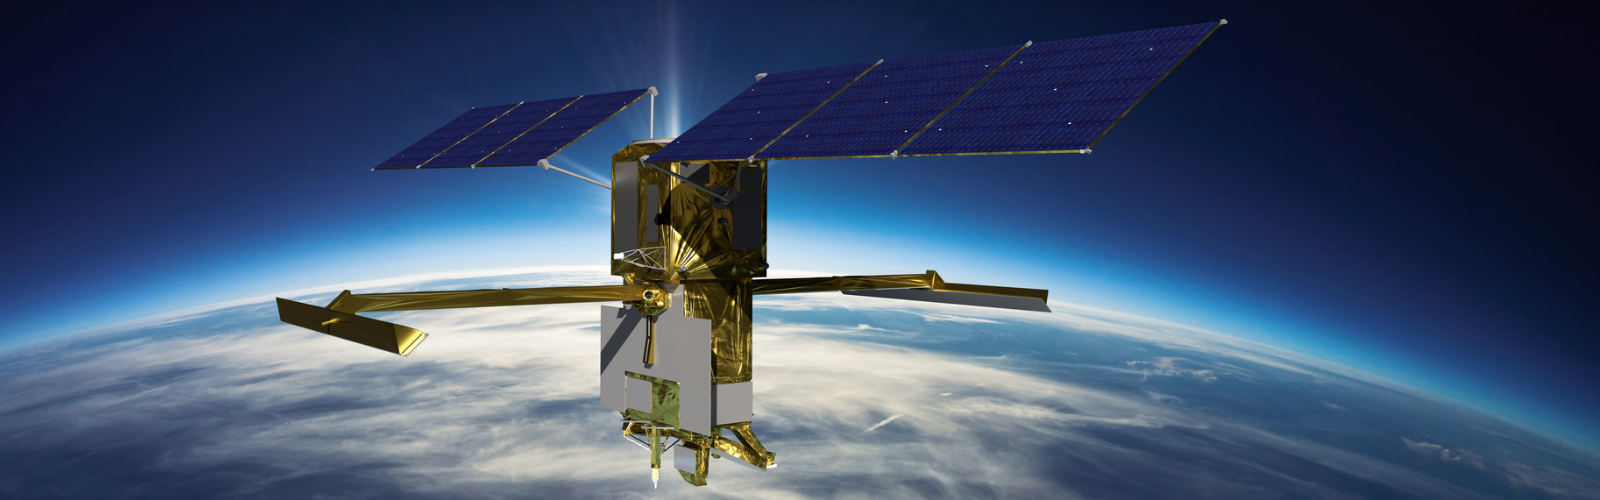 slide 4 - Artist's rendering shows fully deployed SWOT satellite in orbit.